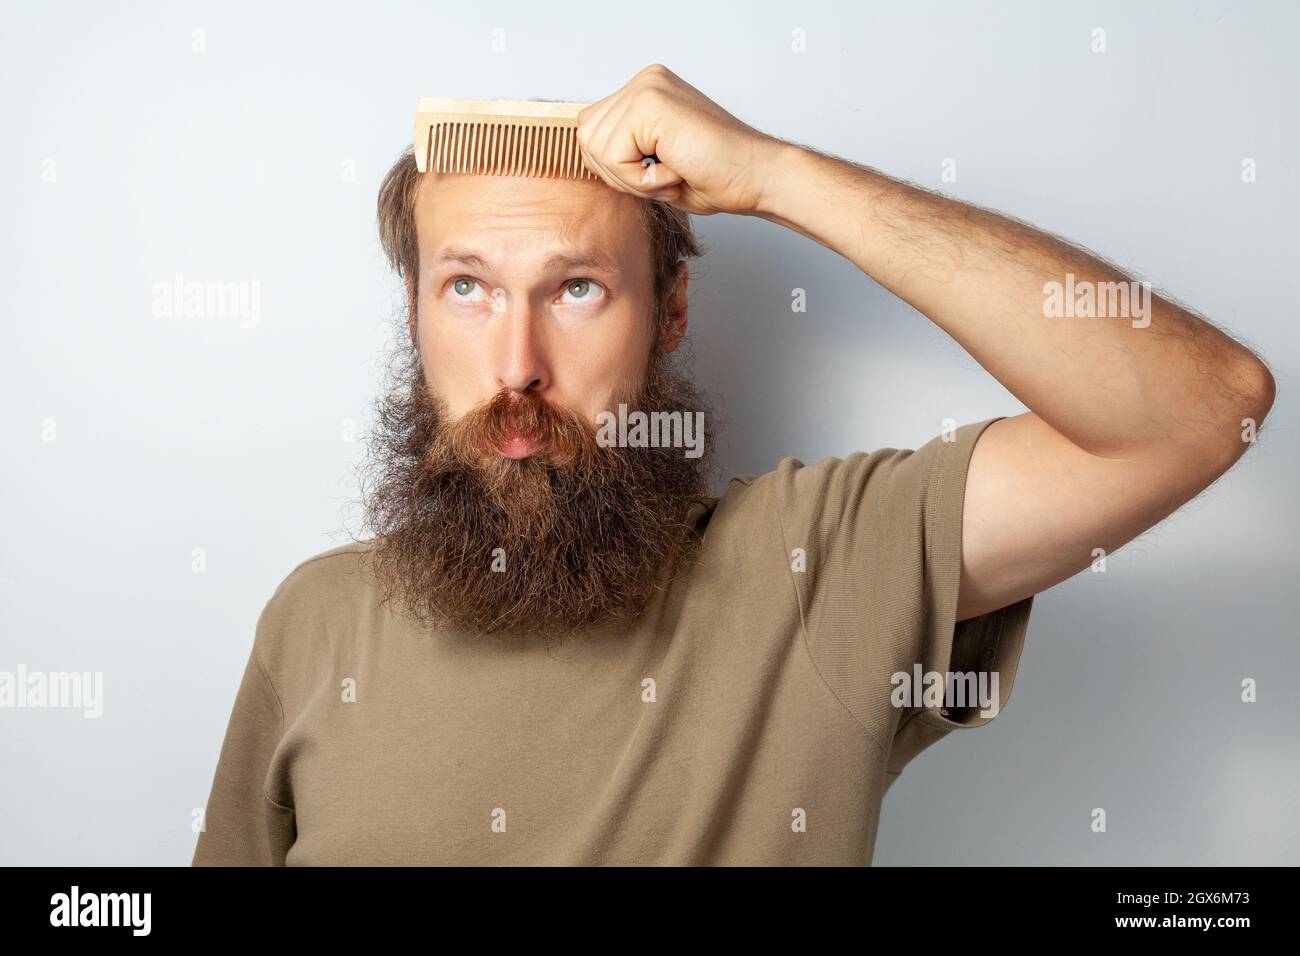 Porträt eines erwachsenen kahlen Mannes mit Haarbürste, Alopezie leidend, mit verwirrtem Gesichtsausdruck aufblickend, bärtiger Mann mit T-Shirt. Innenaufnahme des Studios isoliert auf grauem Hintergrund. Stockfoto